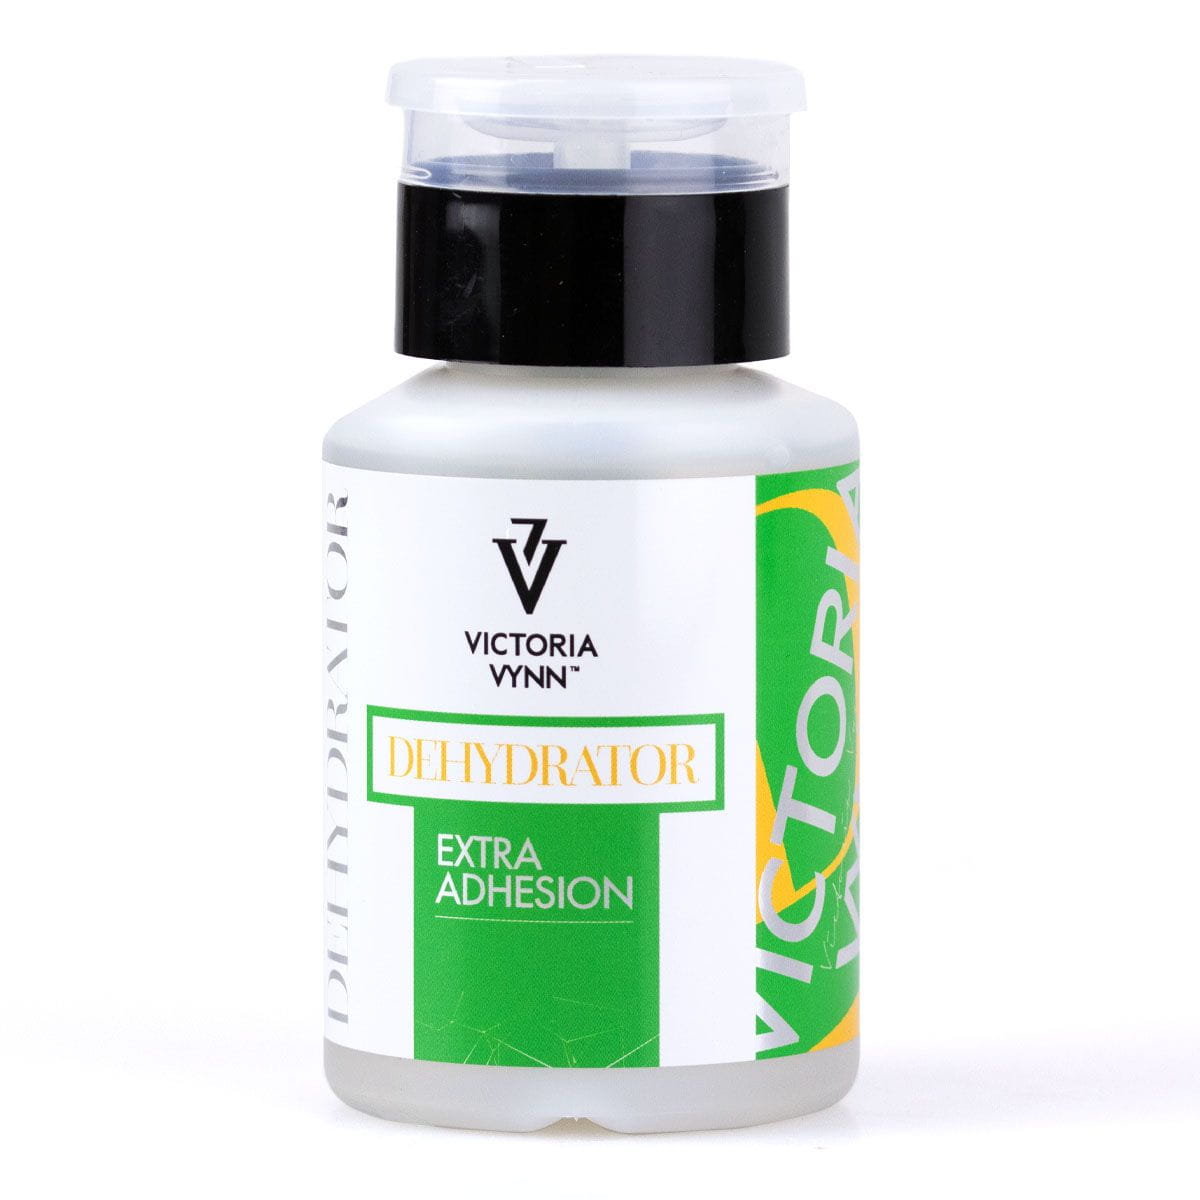 Victoria Vynn DEHYDRATOR Extra Adhesion - do odtłuszczania i oczyszczania naturalnej płytki paznokcia  150 ml 330709